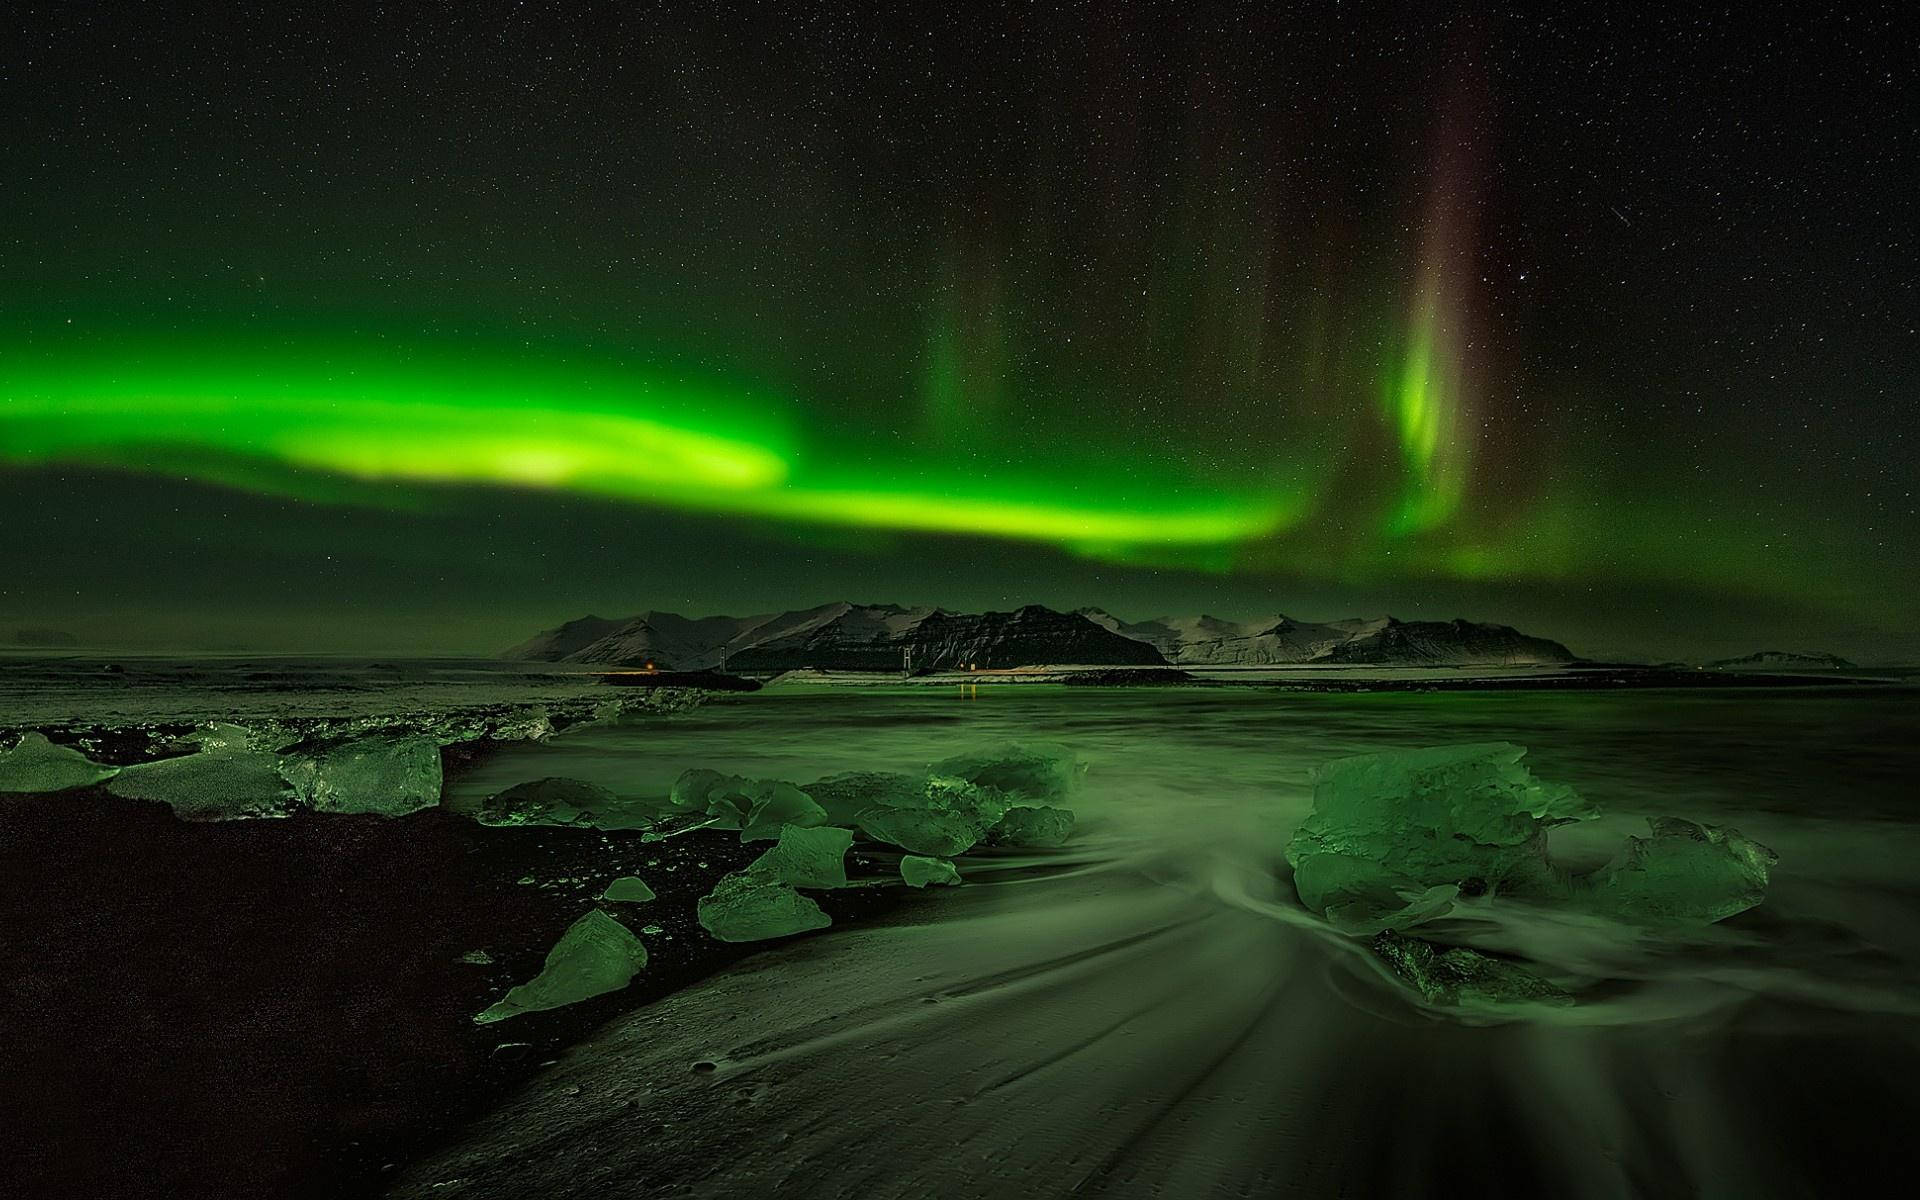 Arctic Aurora Borealis